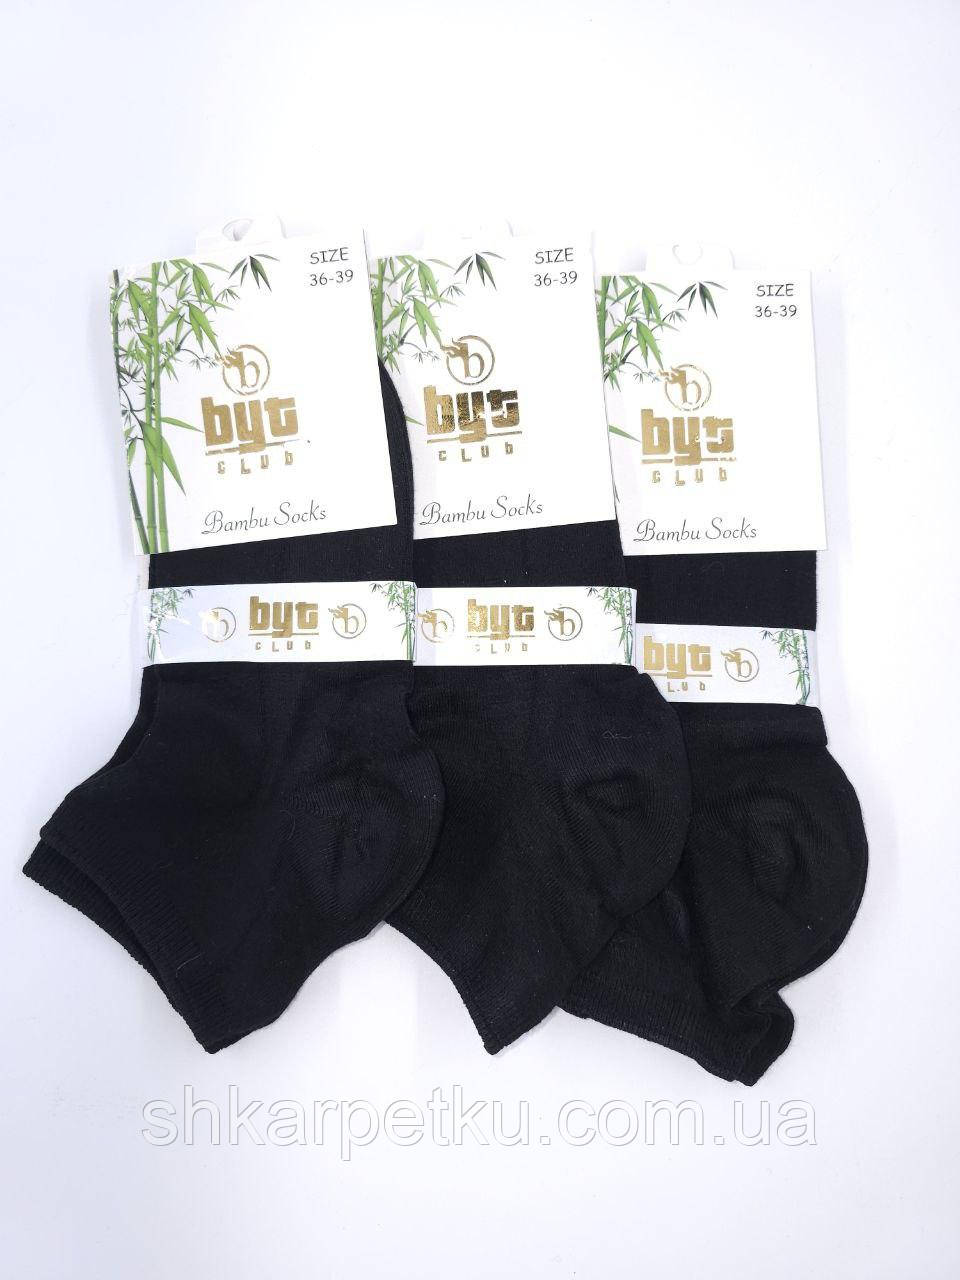 Жіночі короткі шкарпетки Byt club  бамбук, 36-40 12 пар/уп чорні